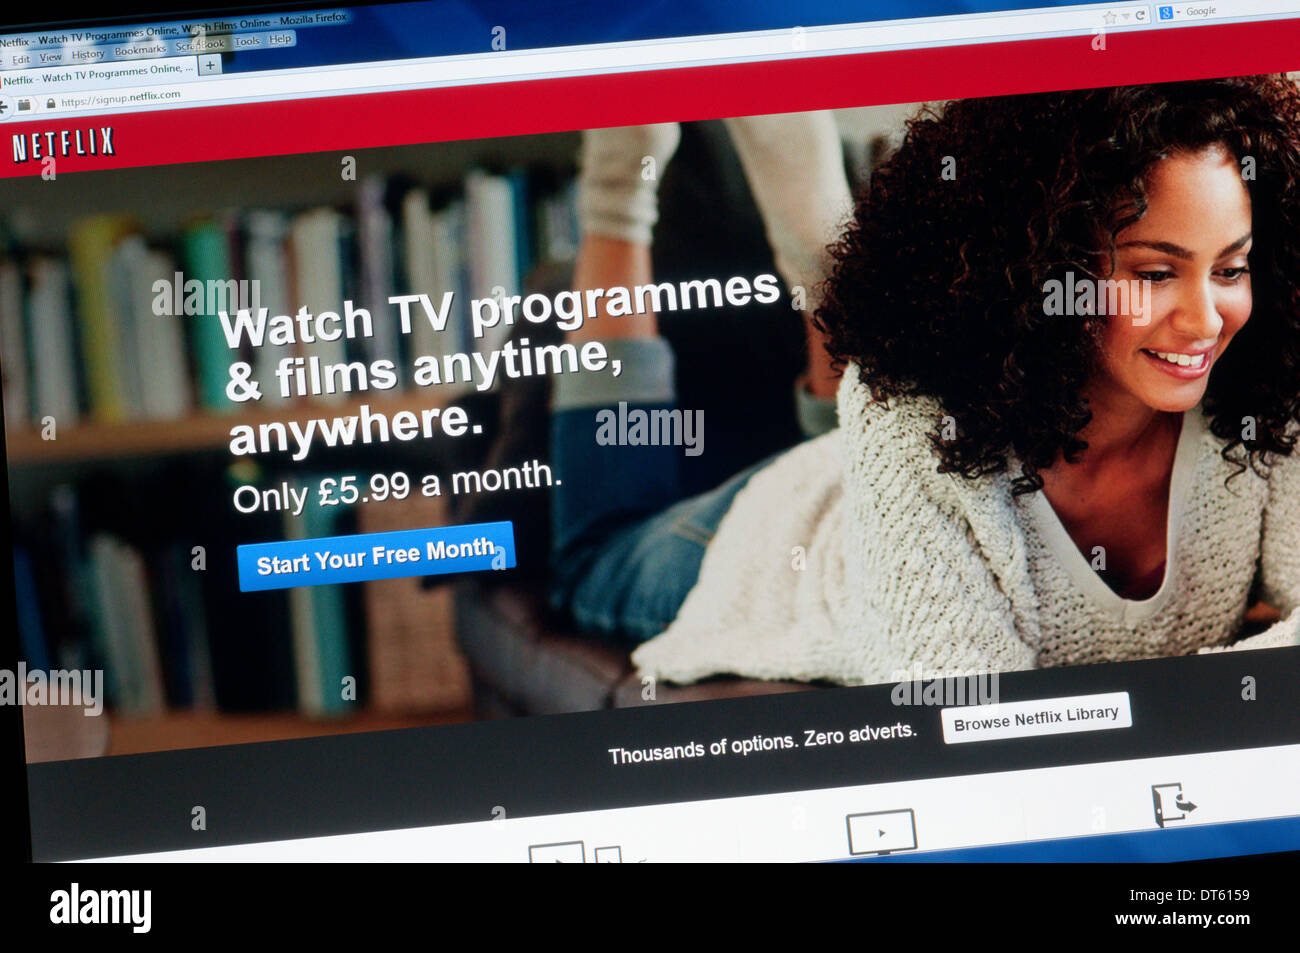 La page d'accueil d'un fournisseur de Netflix sur Internet à la demande Streaming TV et films. Banque D'Images